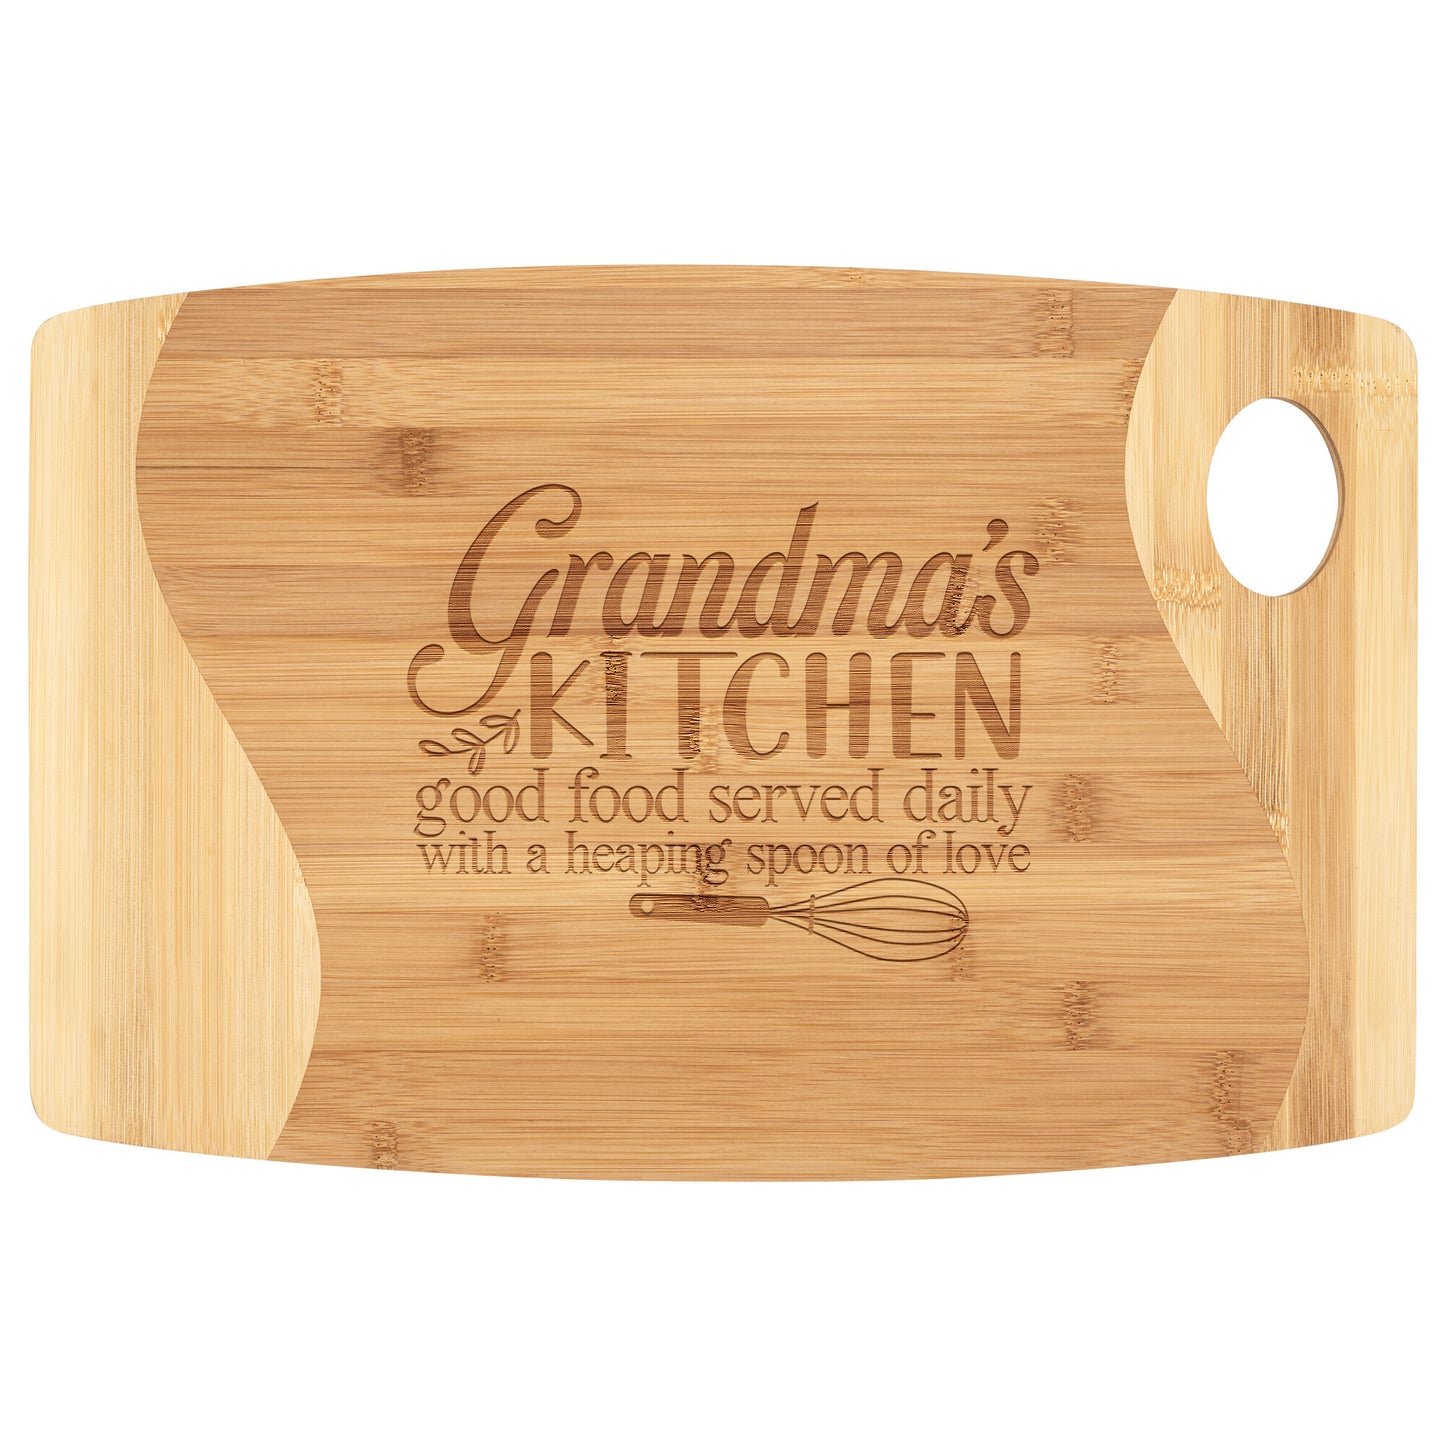 Grandma's Kitchen Bamboo Cutting Board